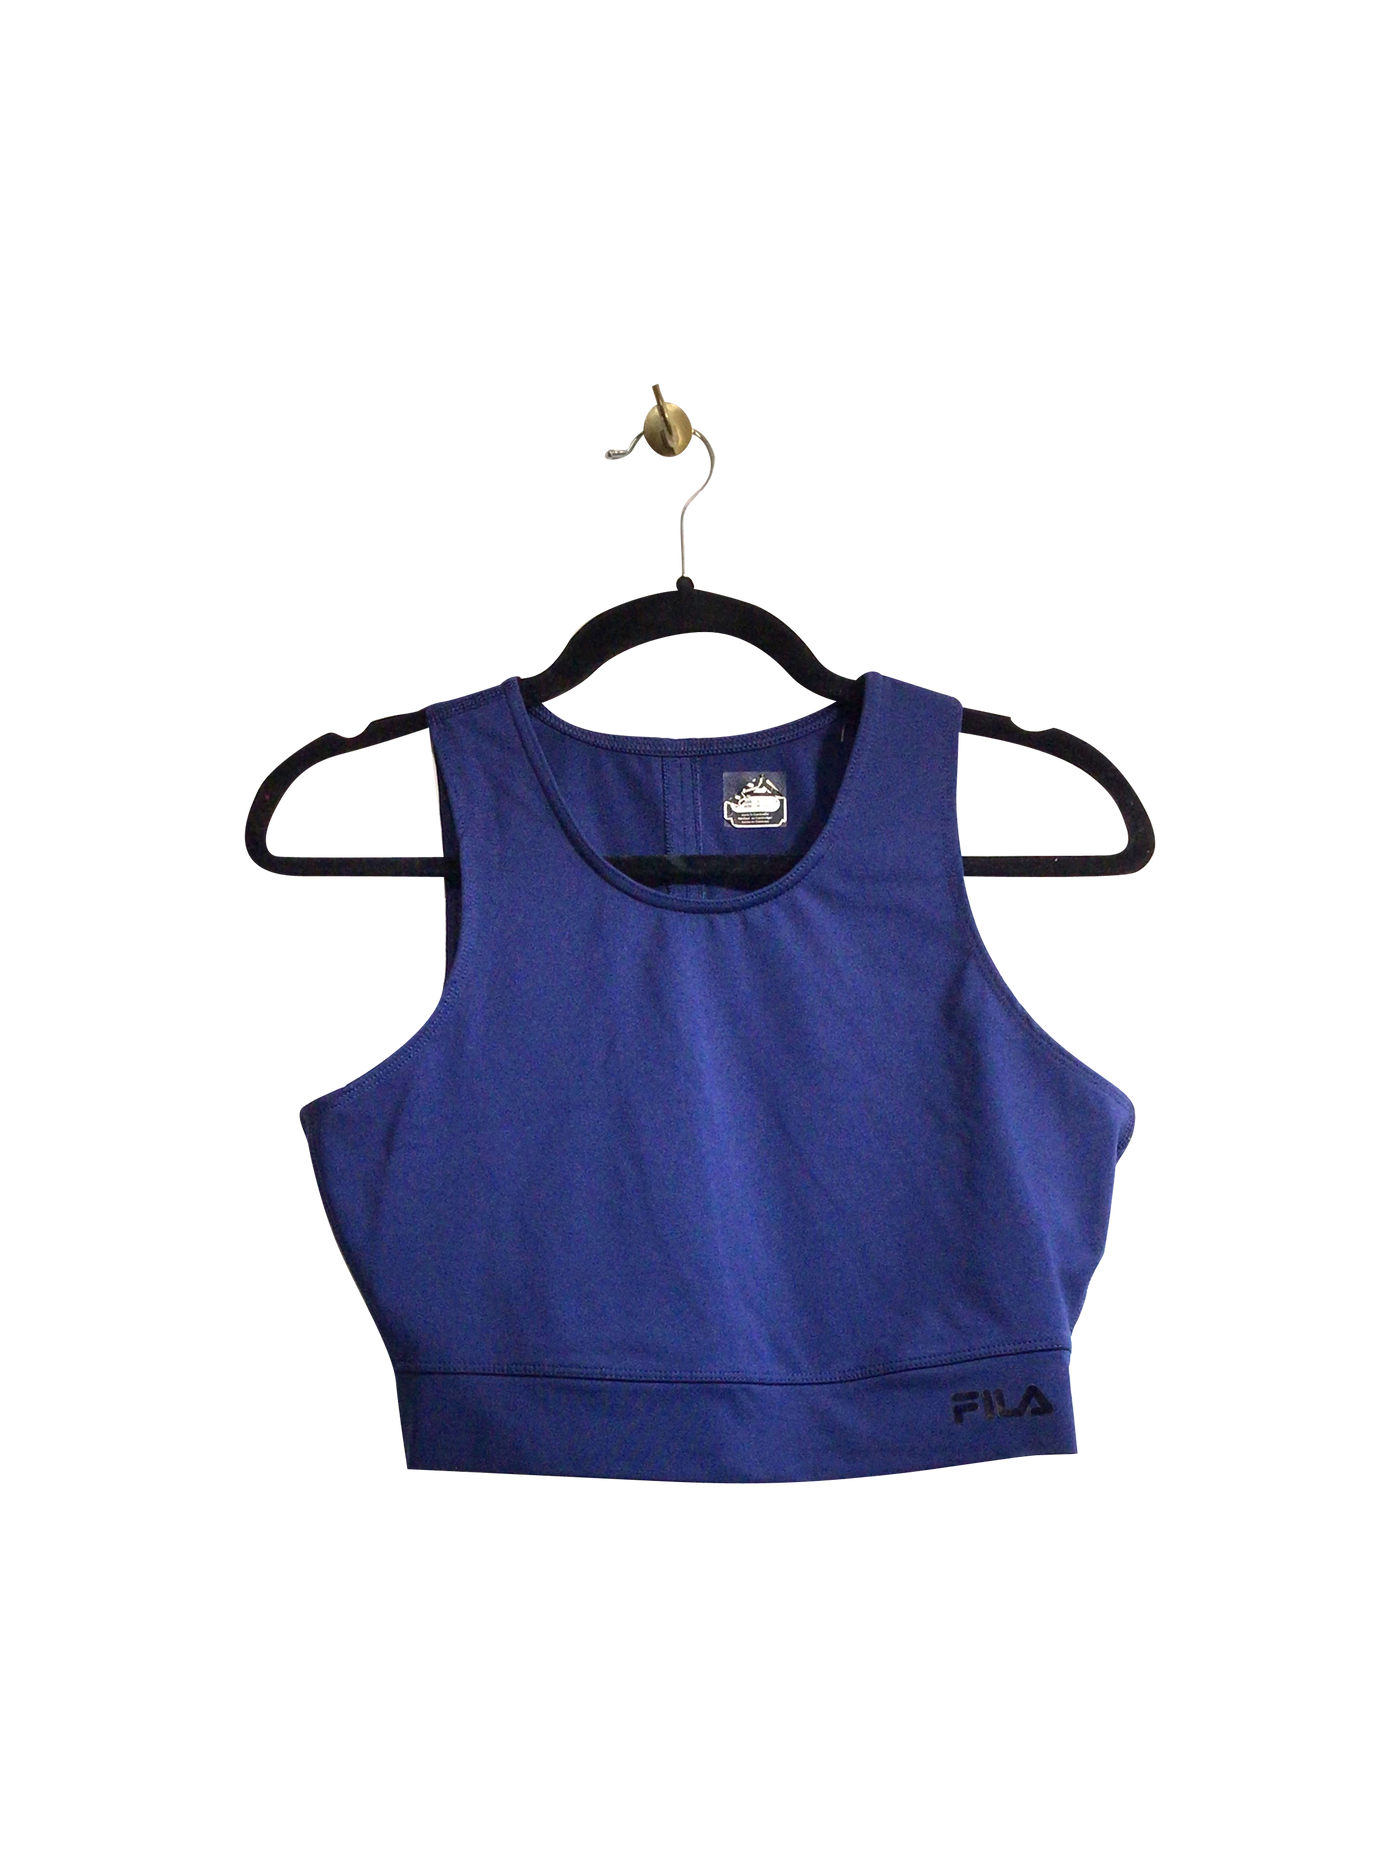 FILA Women Activewear Sports Bras Regular fit in Blue - Size M | 18.39 $ KOOP